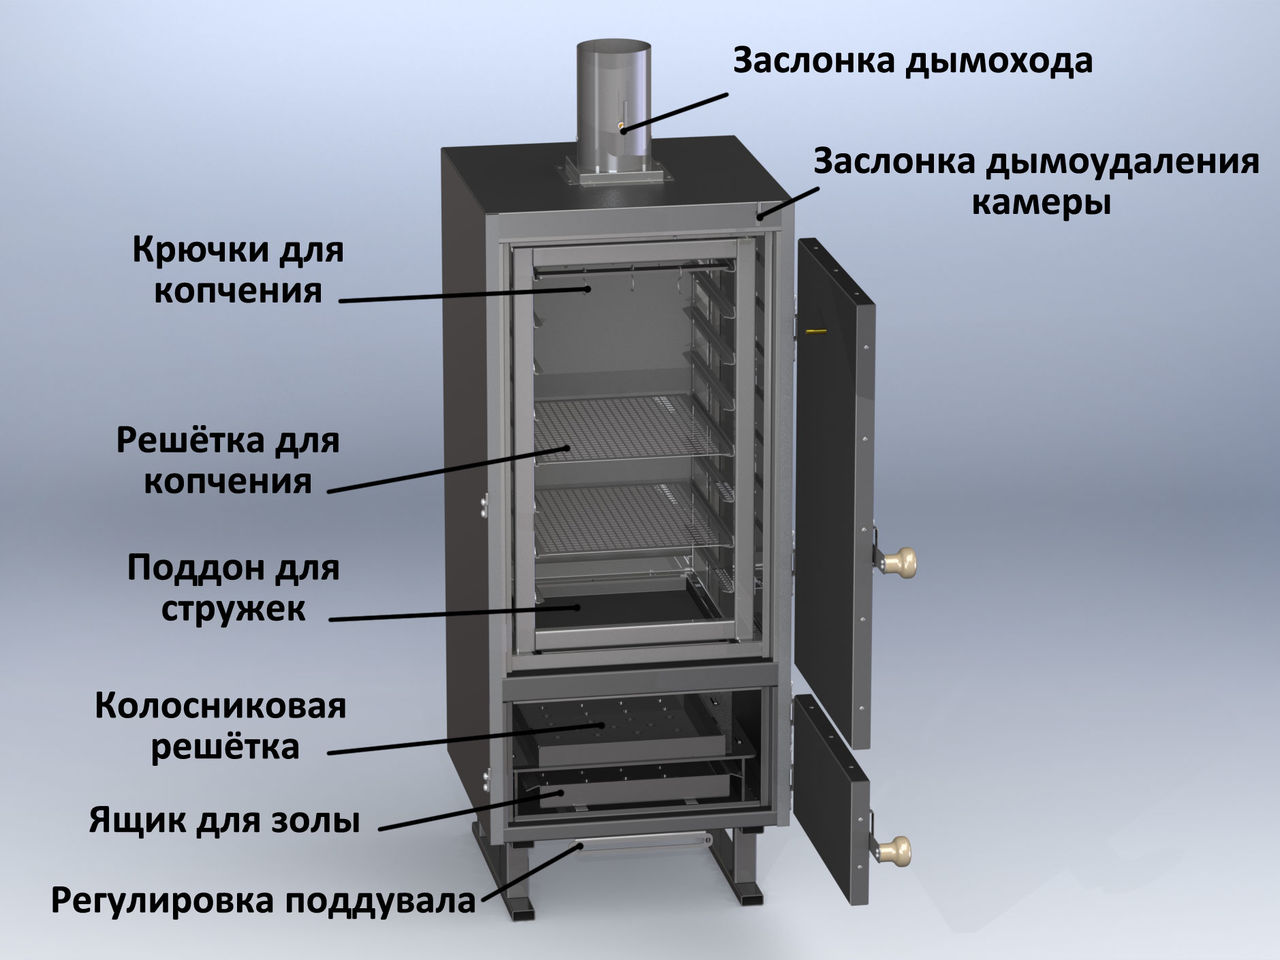 Стационарная печь. Коптильня Vesta "model k" (585х550х1466мм, 7 уровней, решетка 326х383 мм). Конструкция коптильни горячего копчения. Коптильный шкаф КП 100. Коптильня Vesta model k.